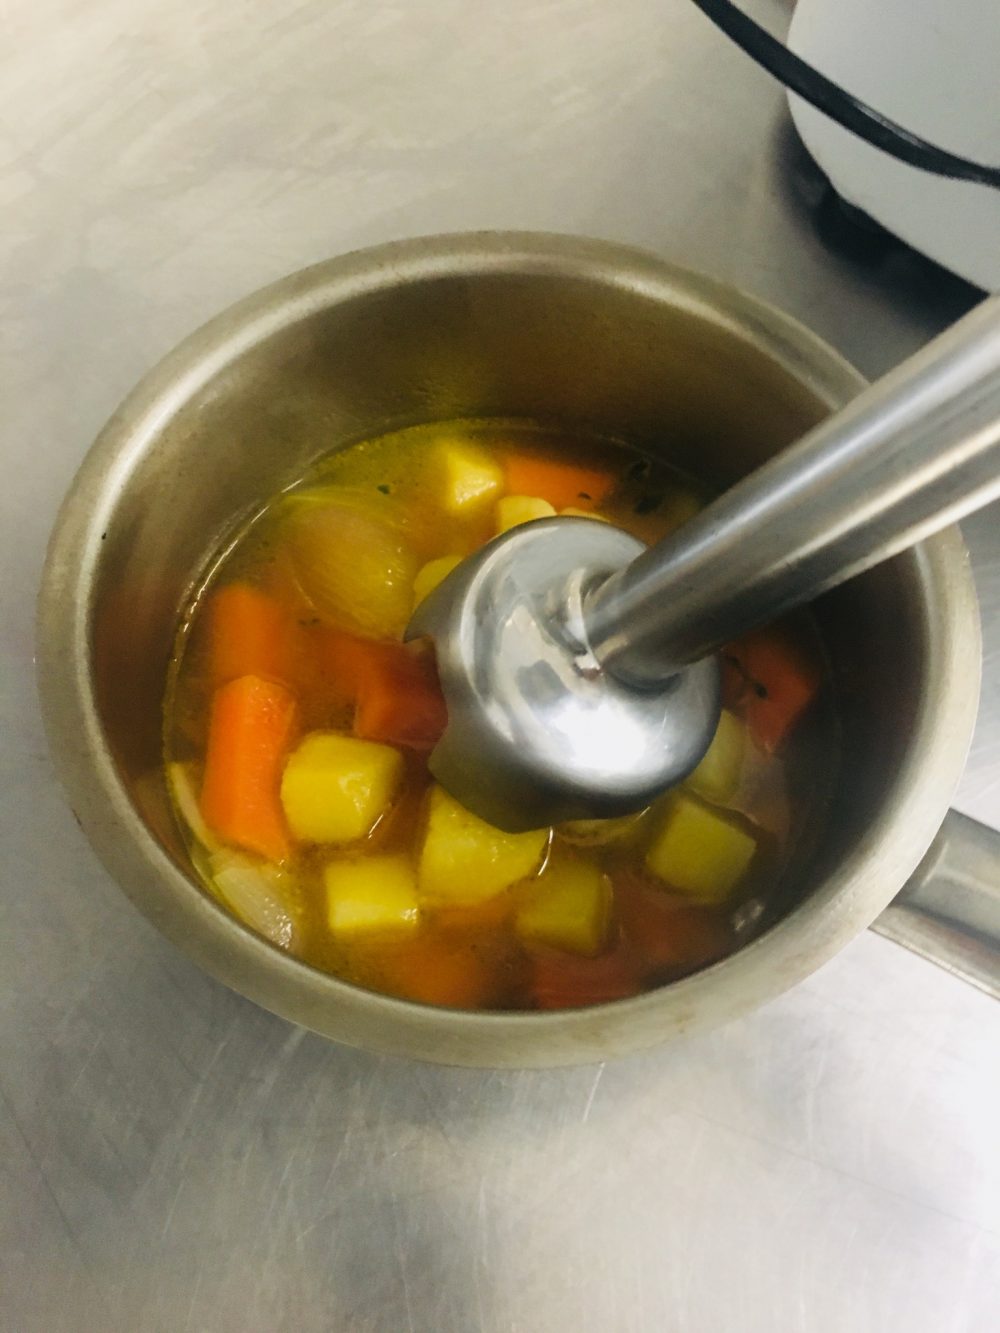 Velluatat di carote al timo con bigne’ di curcuma e yogurt greco - preparazione